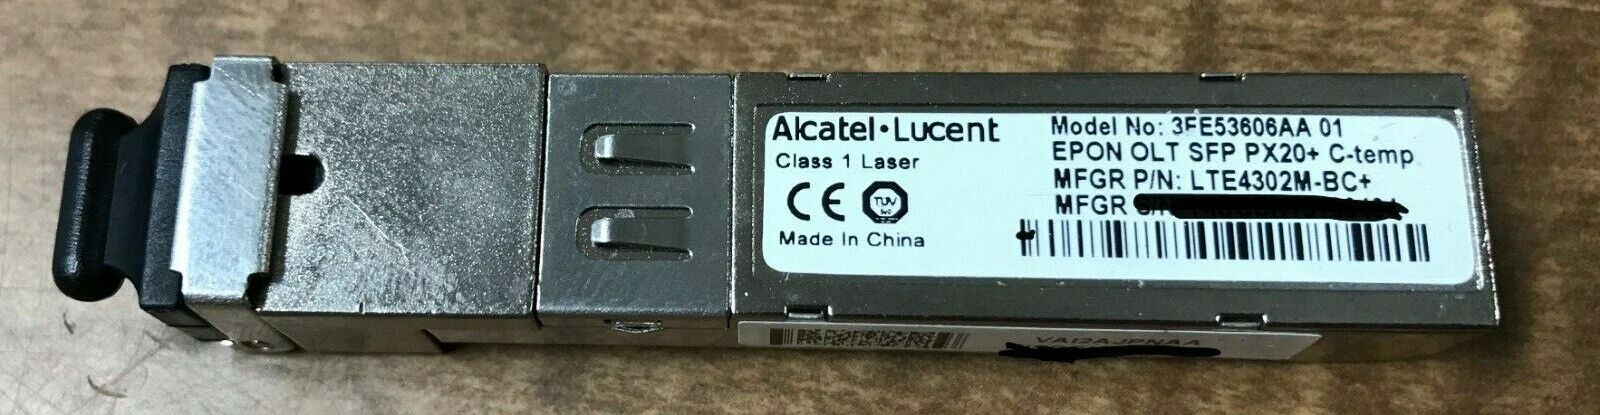 3FE53606AA 01 Alcatel-Lucent Refurb Optic